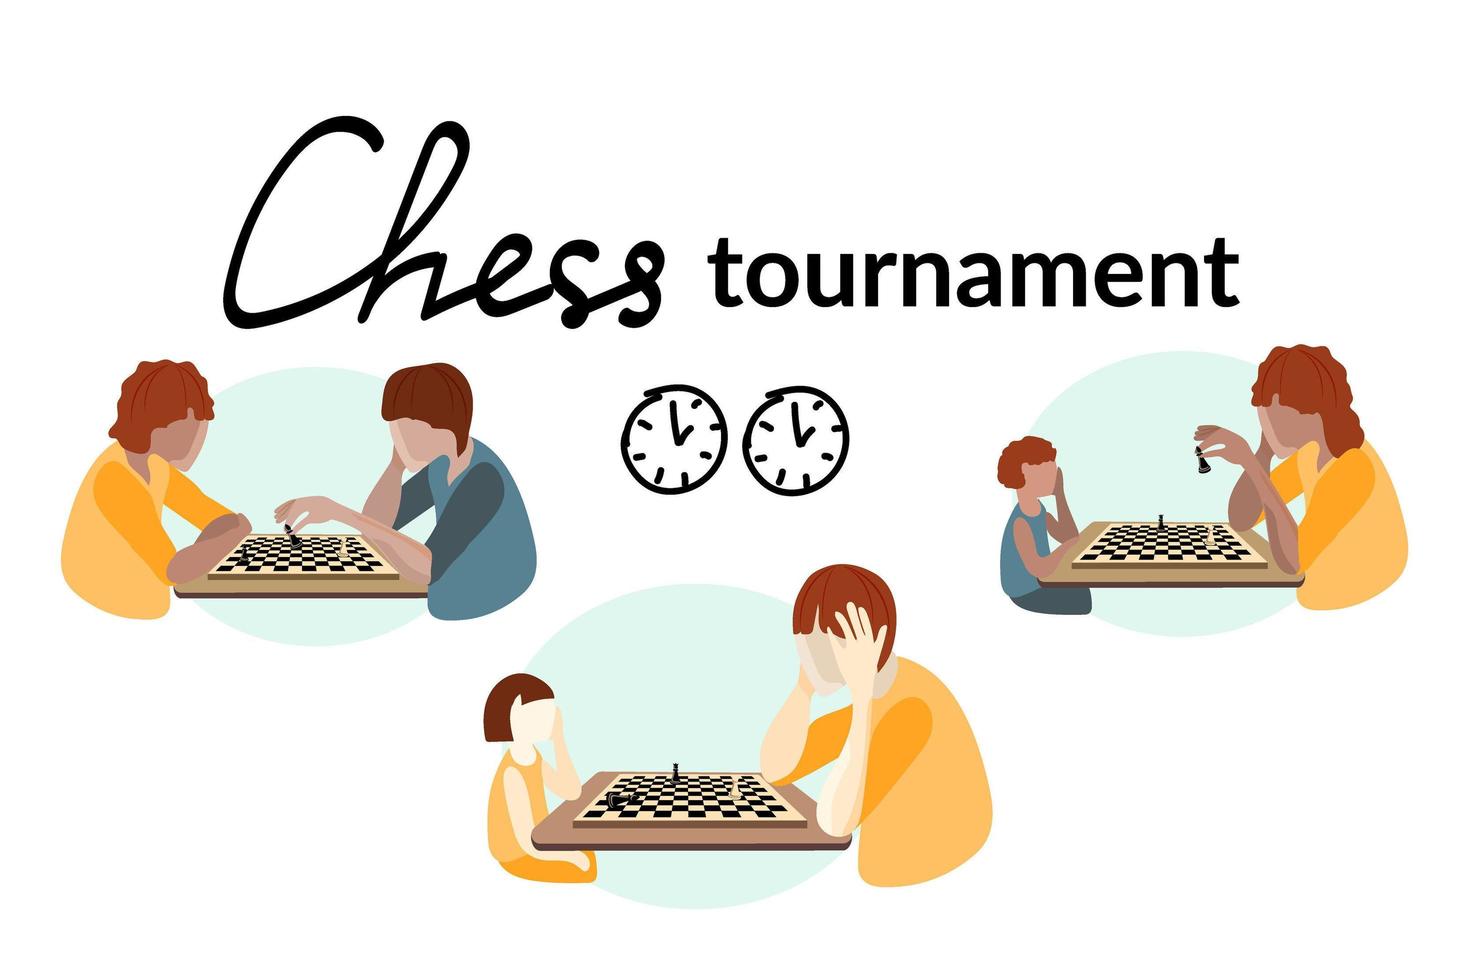 el concepto de un torneo de ajedrez. personas de diferentes edades y razas juegan al ajedrez. tablero de ajedrez y las piezas en él. vector de estilo plano.